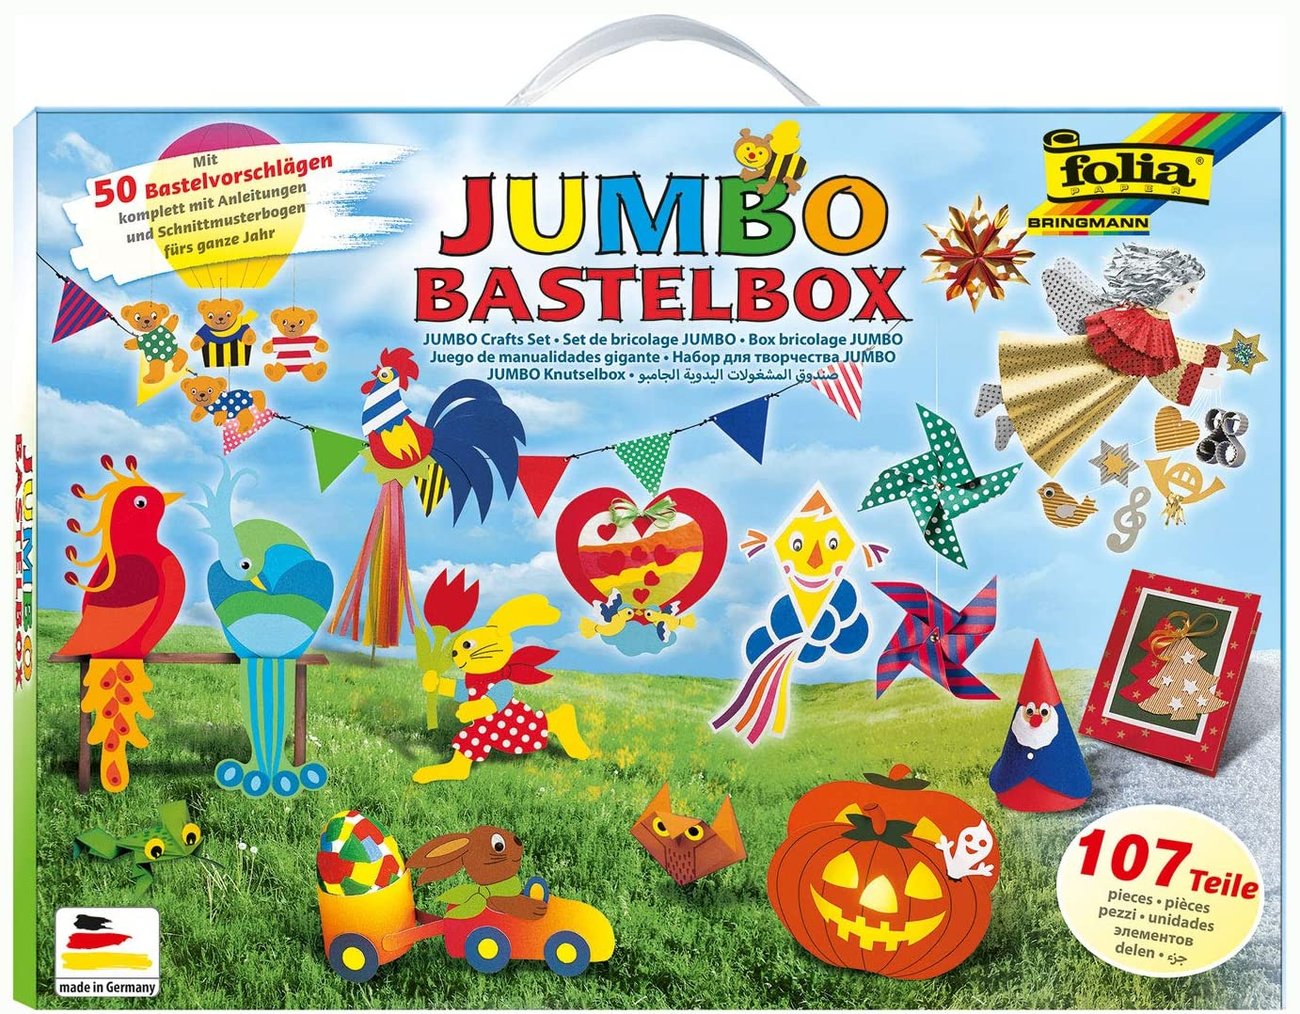 Bastelboxen für Kinder: Jumbo Bastelbox von Folia